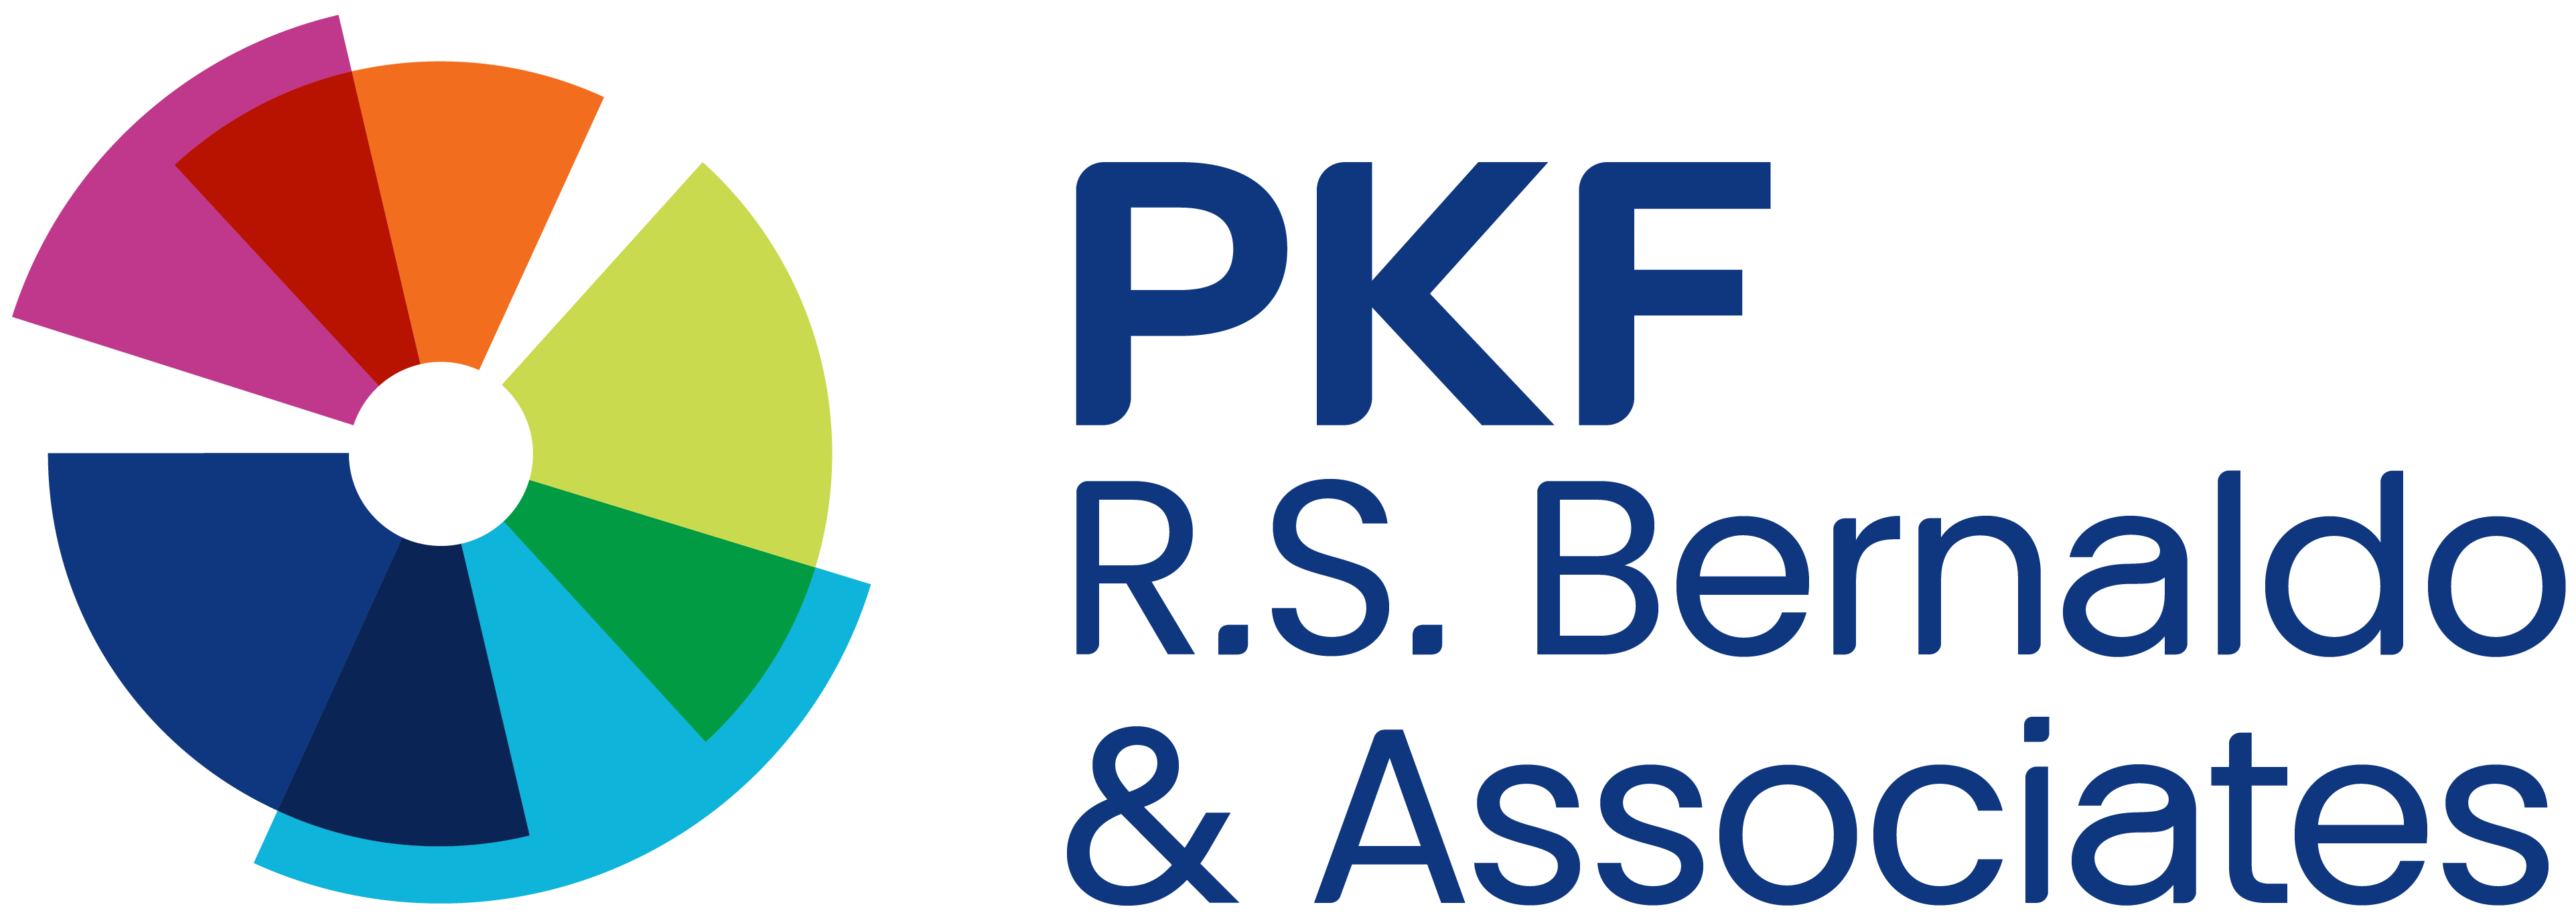 PKF R.S. Bernaldo & Associates logo